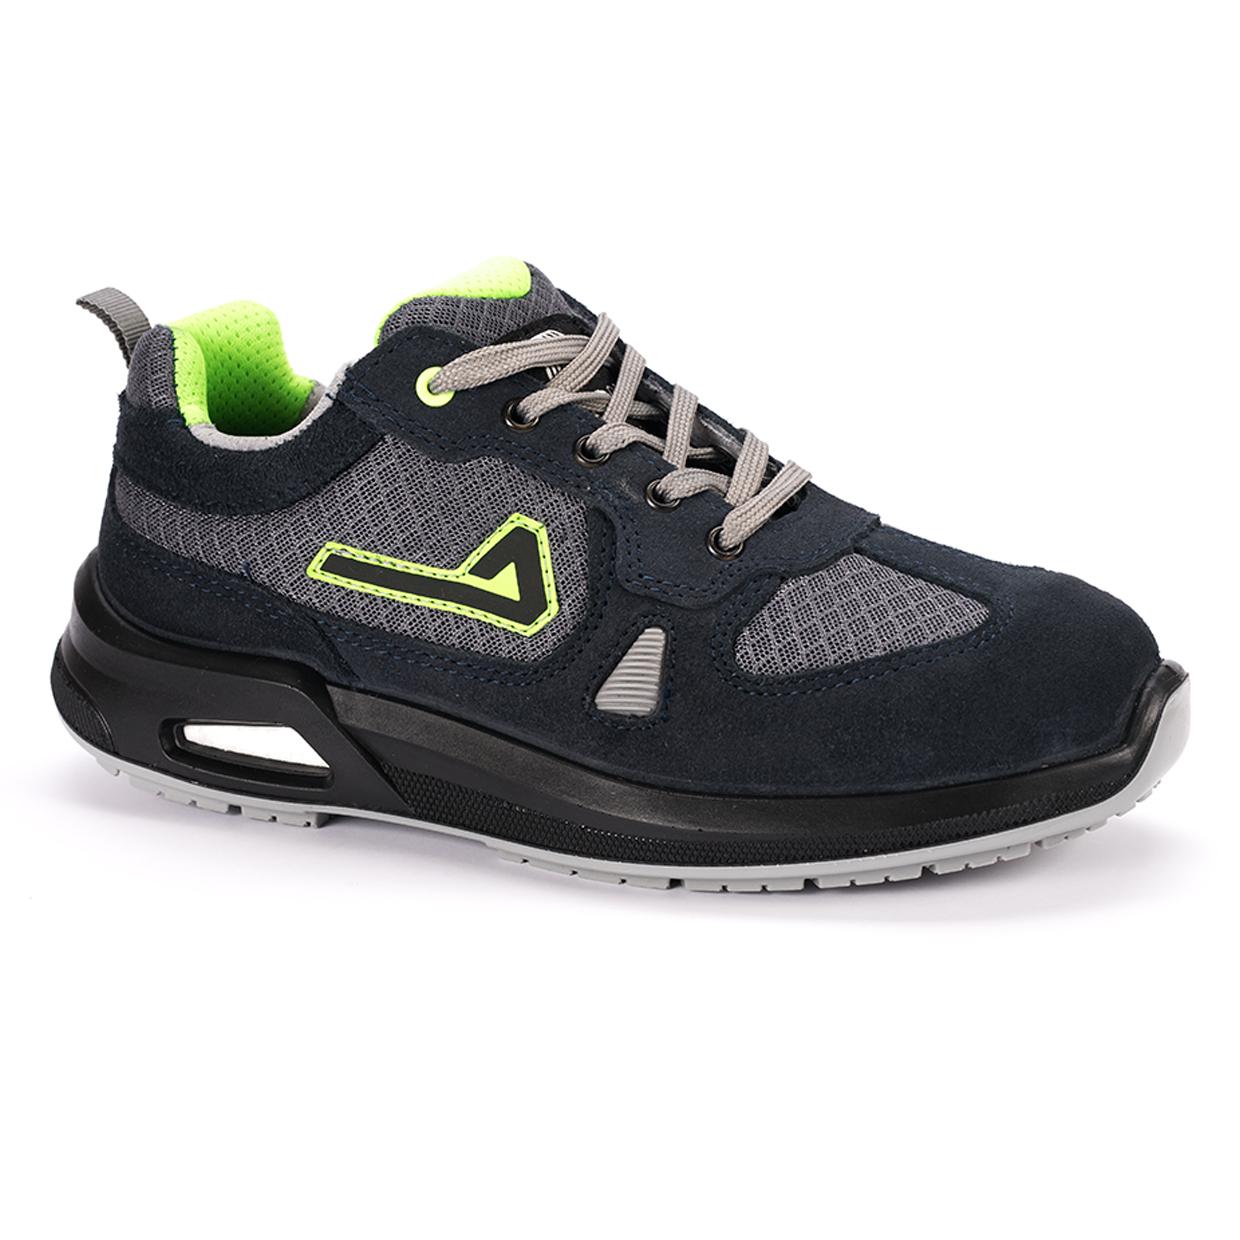 Selected image for AIMONT Bezbednosne plitke cipele Oxygen S1P crno-sive